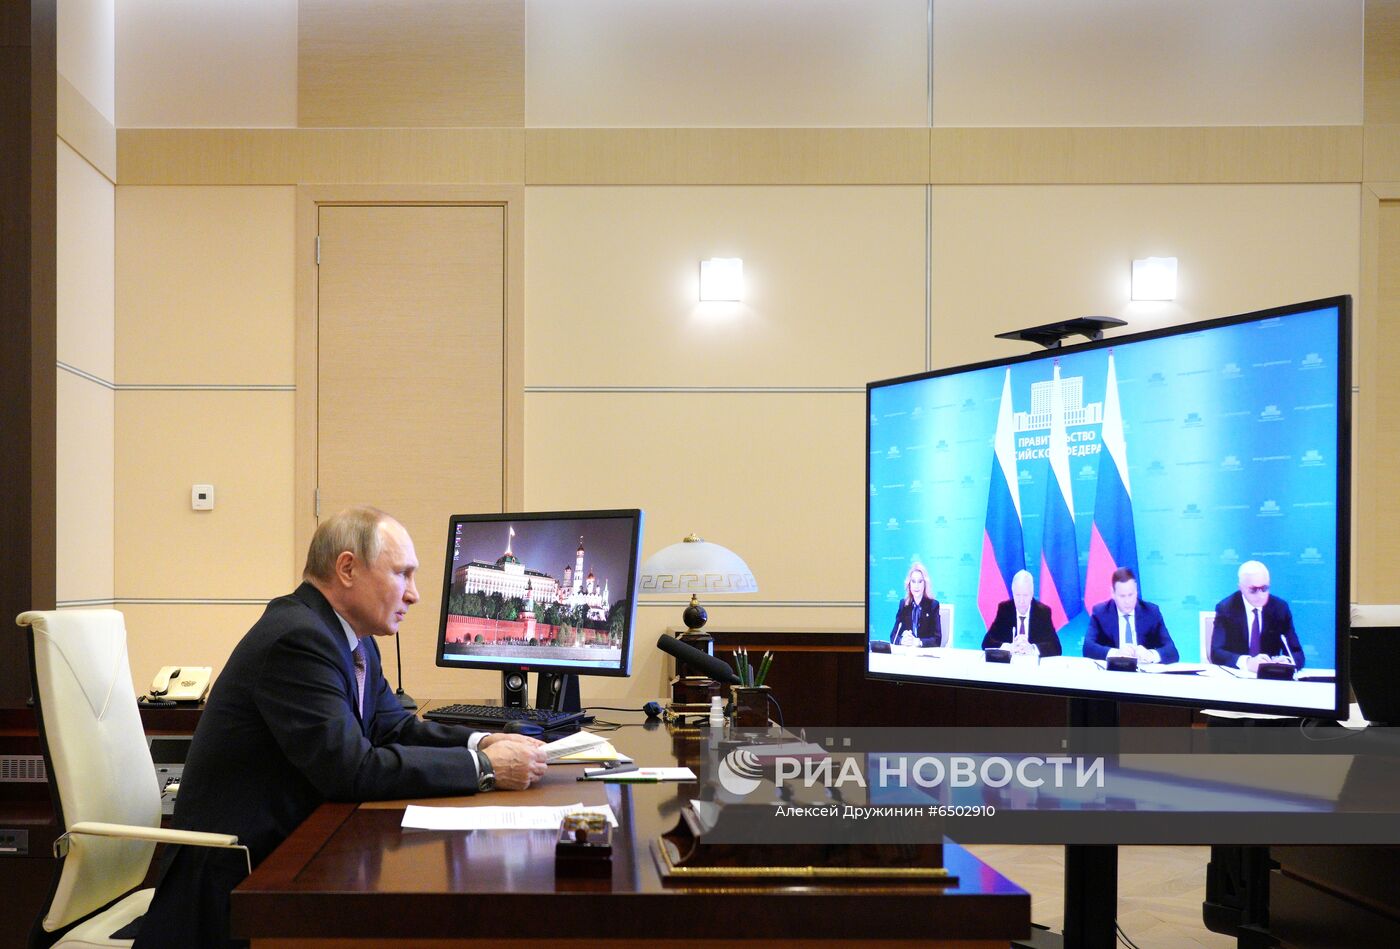 Президент РФ В. Путин принял участие в церемонии подписания соглашения между объединениями профсоюзов, работодателей и правительством РФ